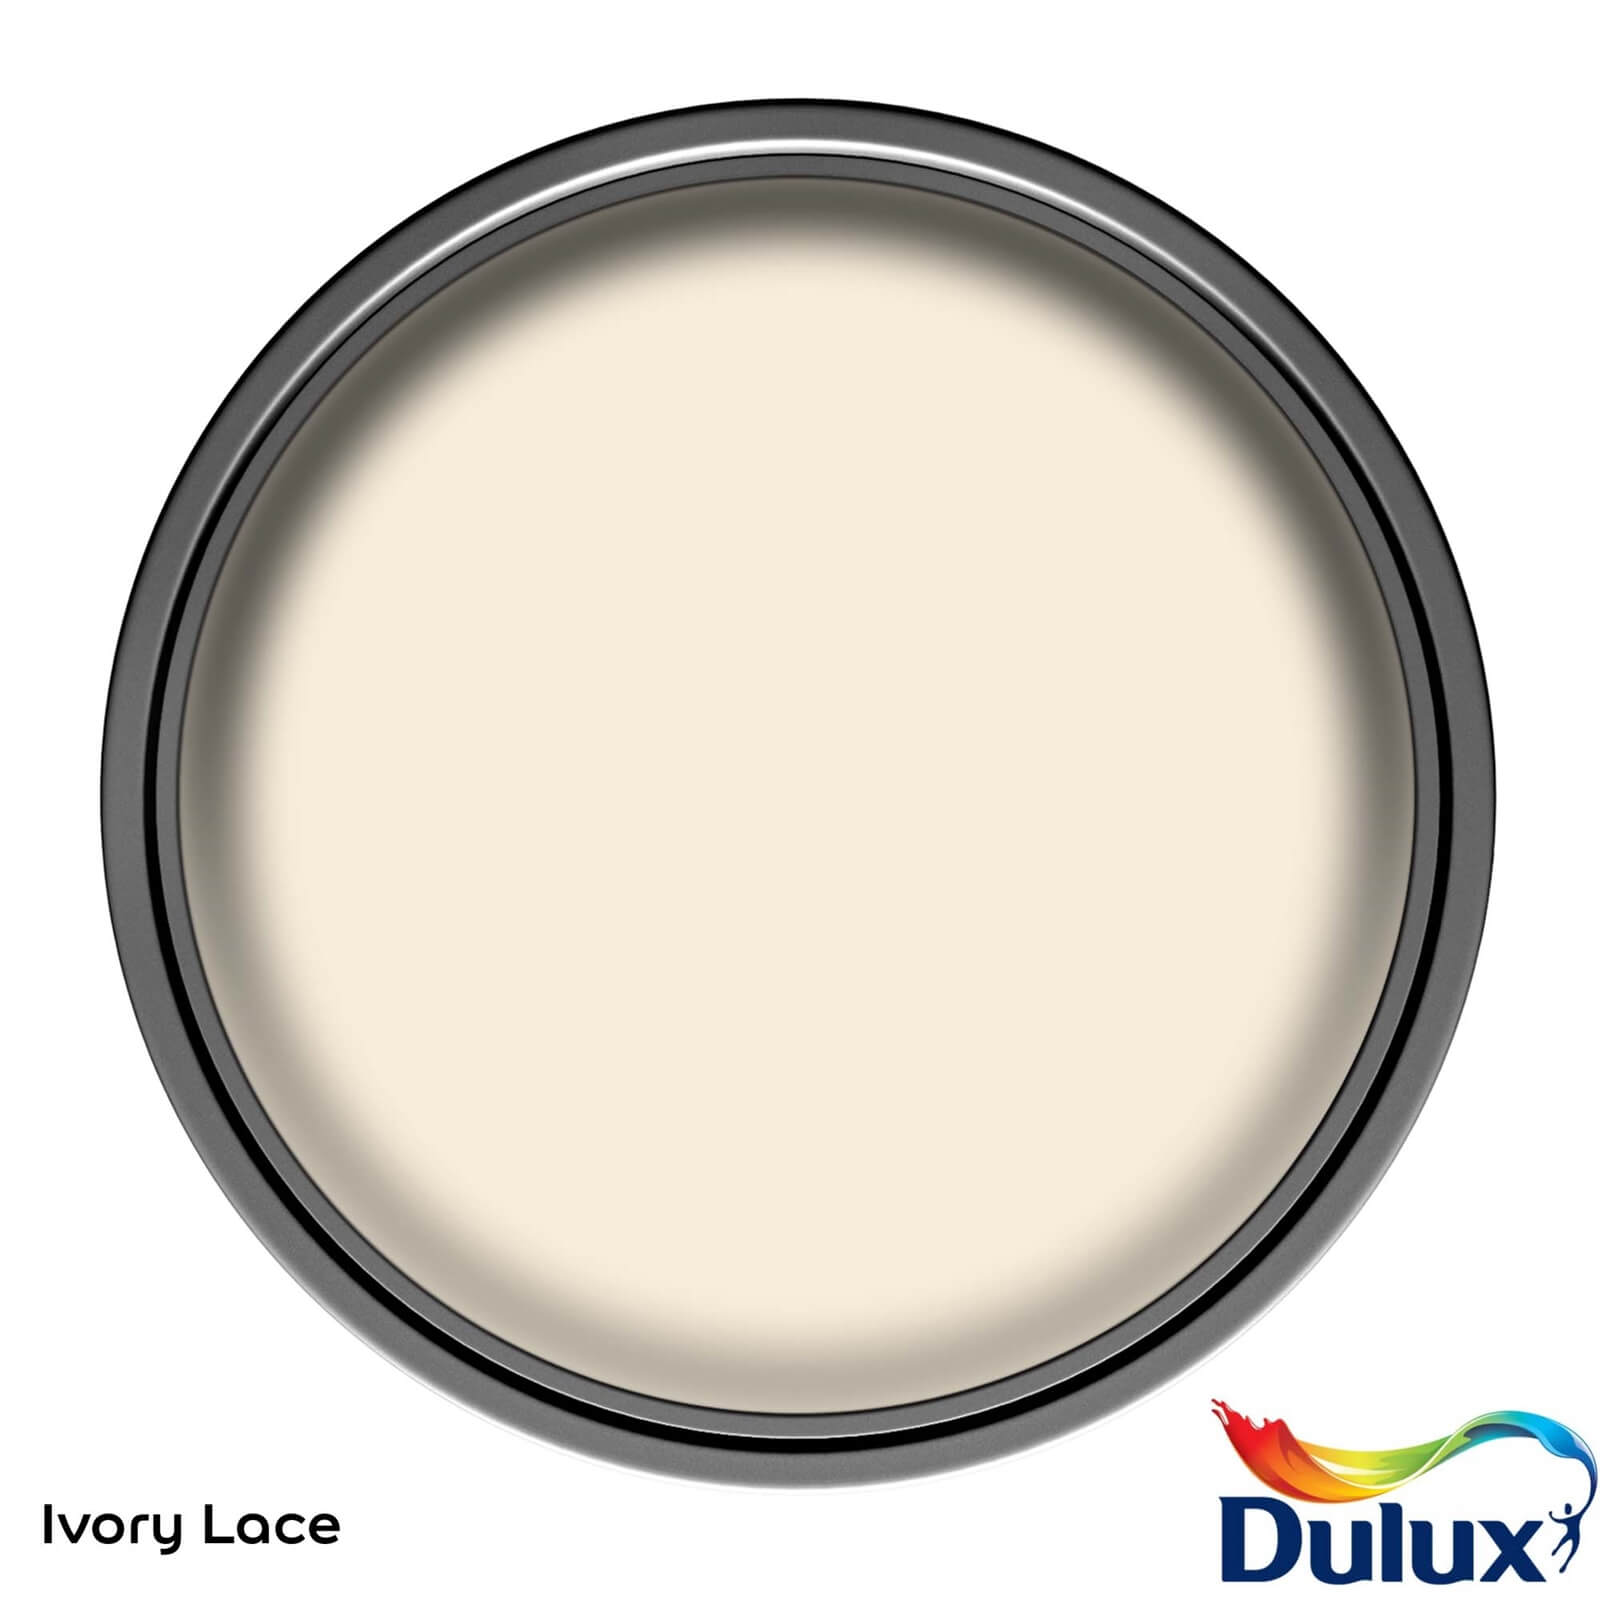 Dulux Once Ivory Lace - Matt Emulsion Paint - 2.5L